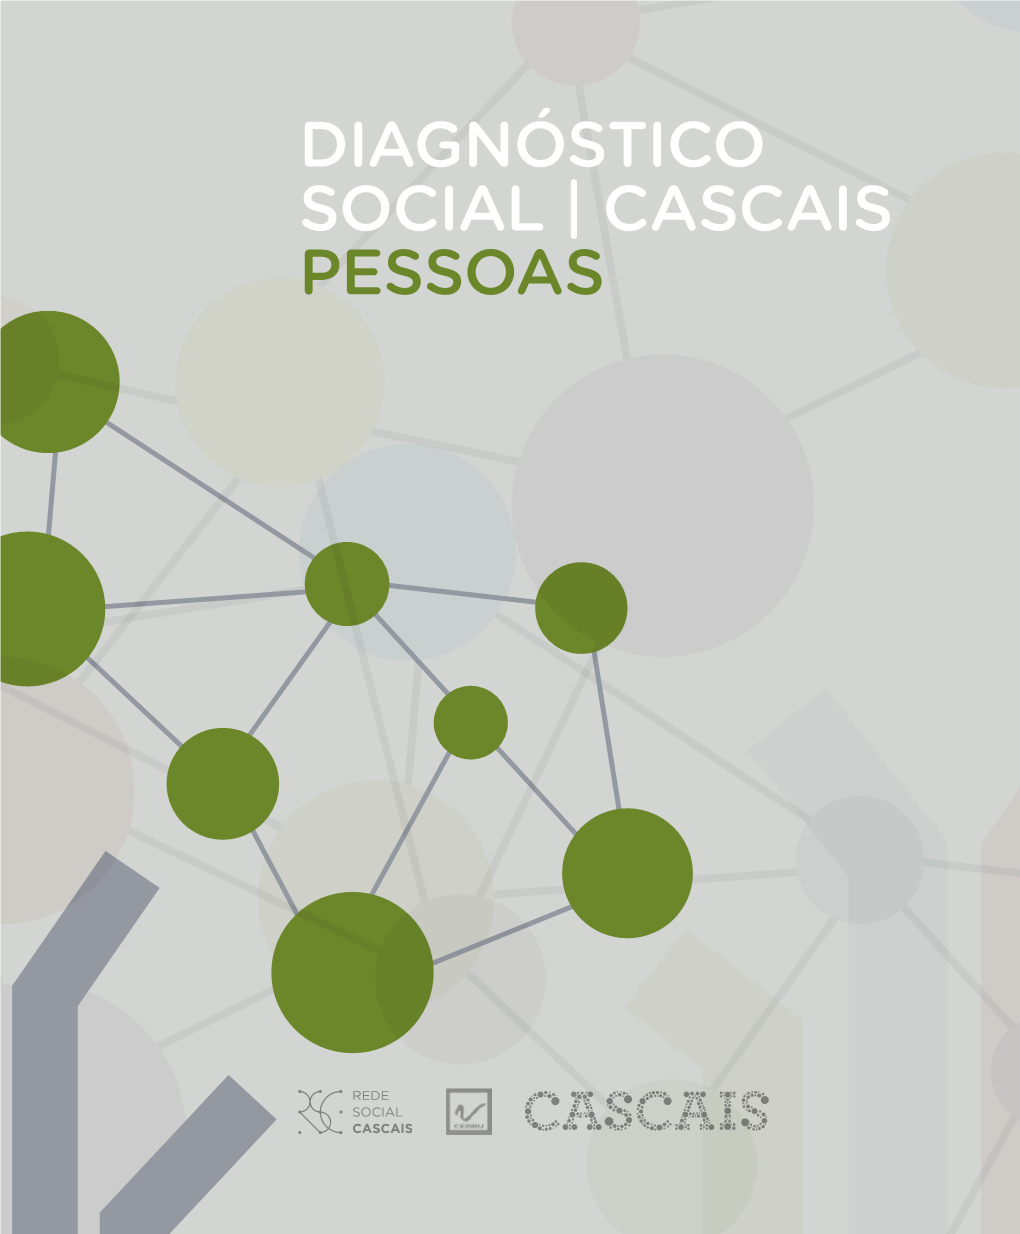 Diagnóstico Social | Cascais Pessoas